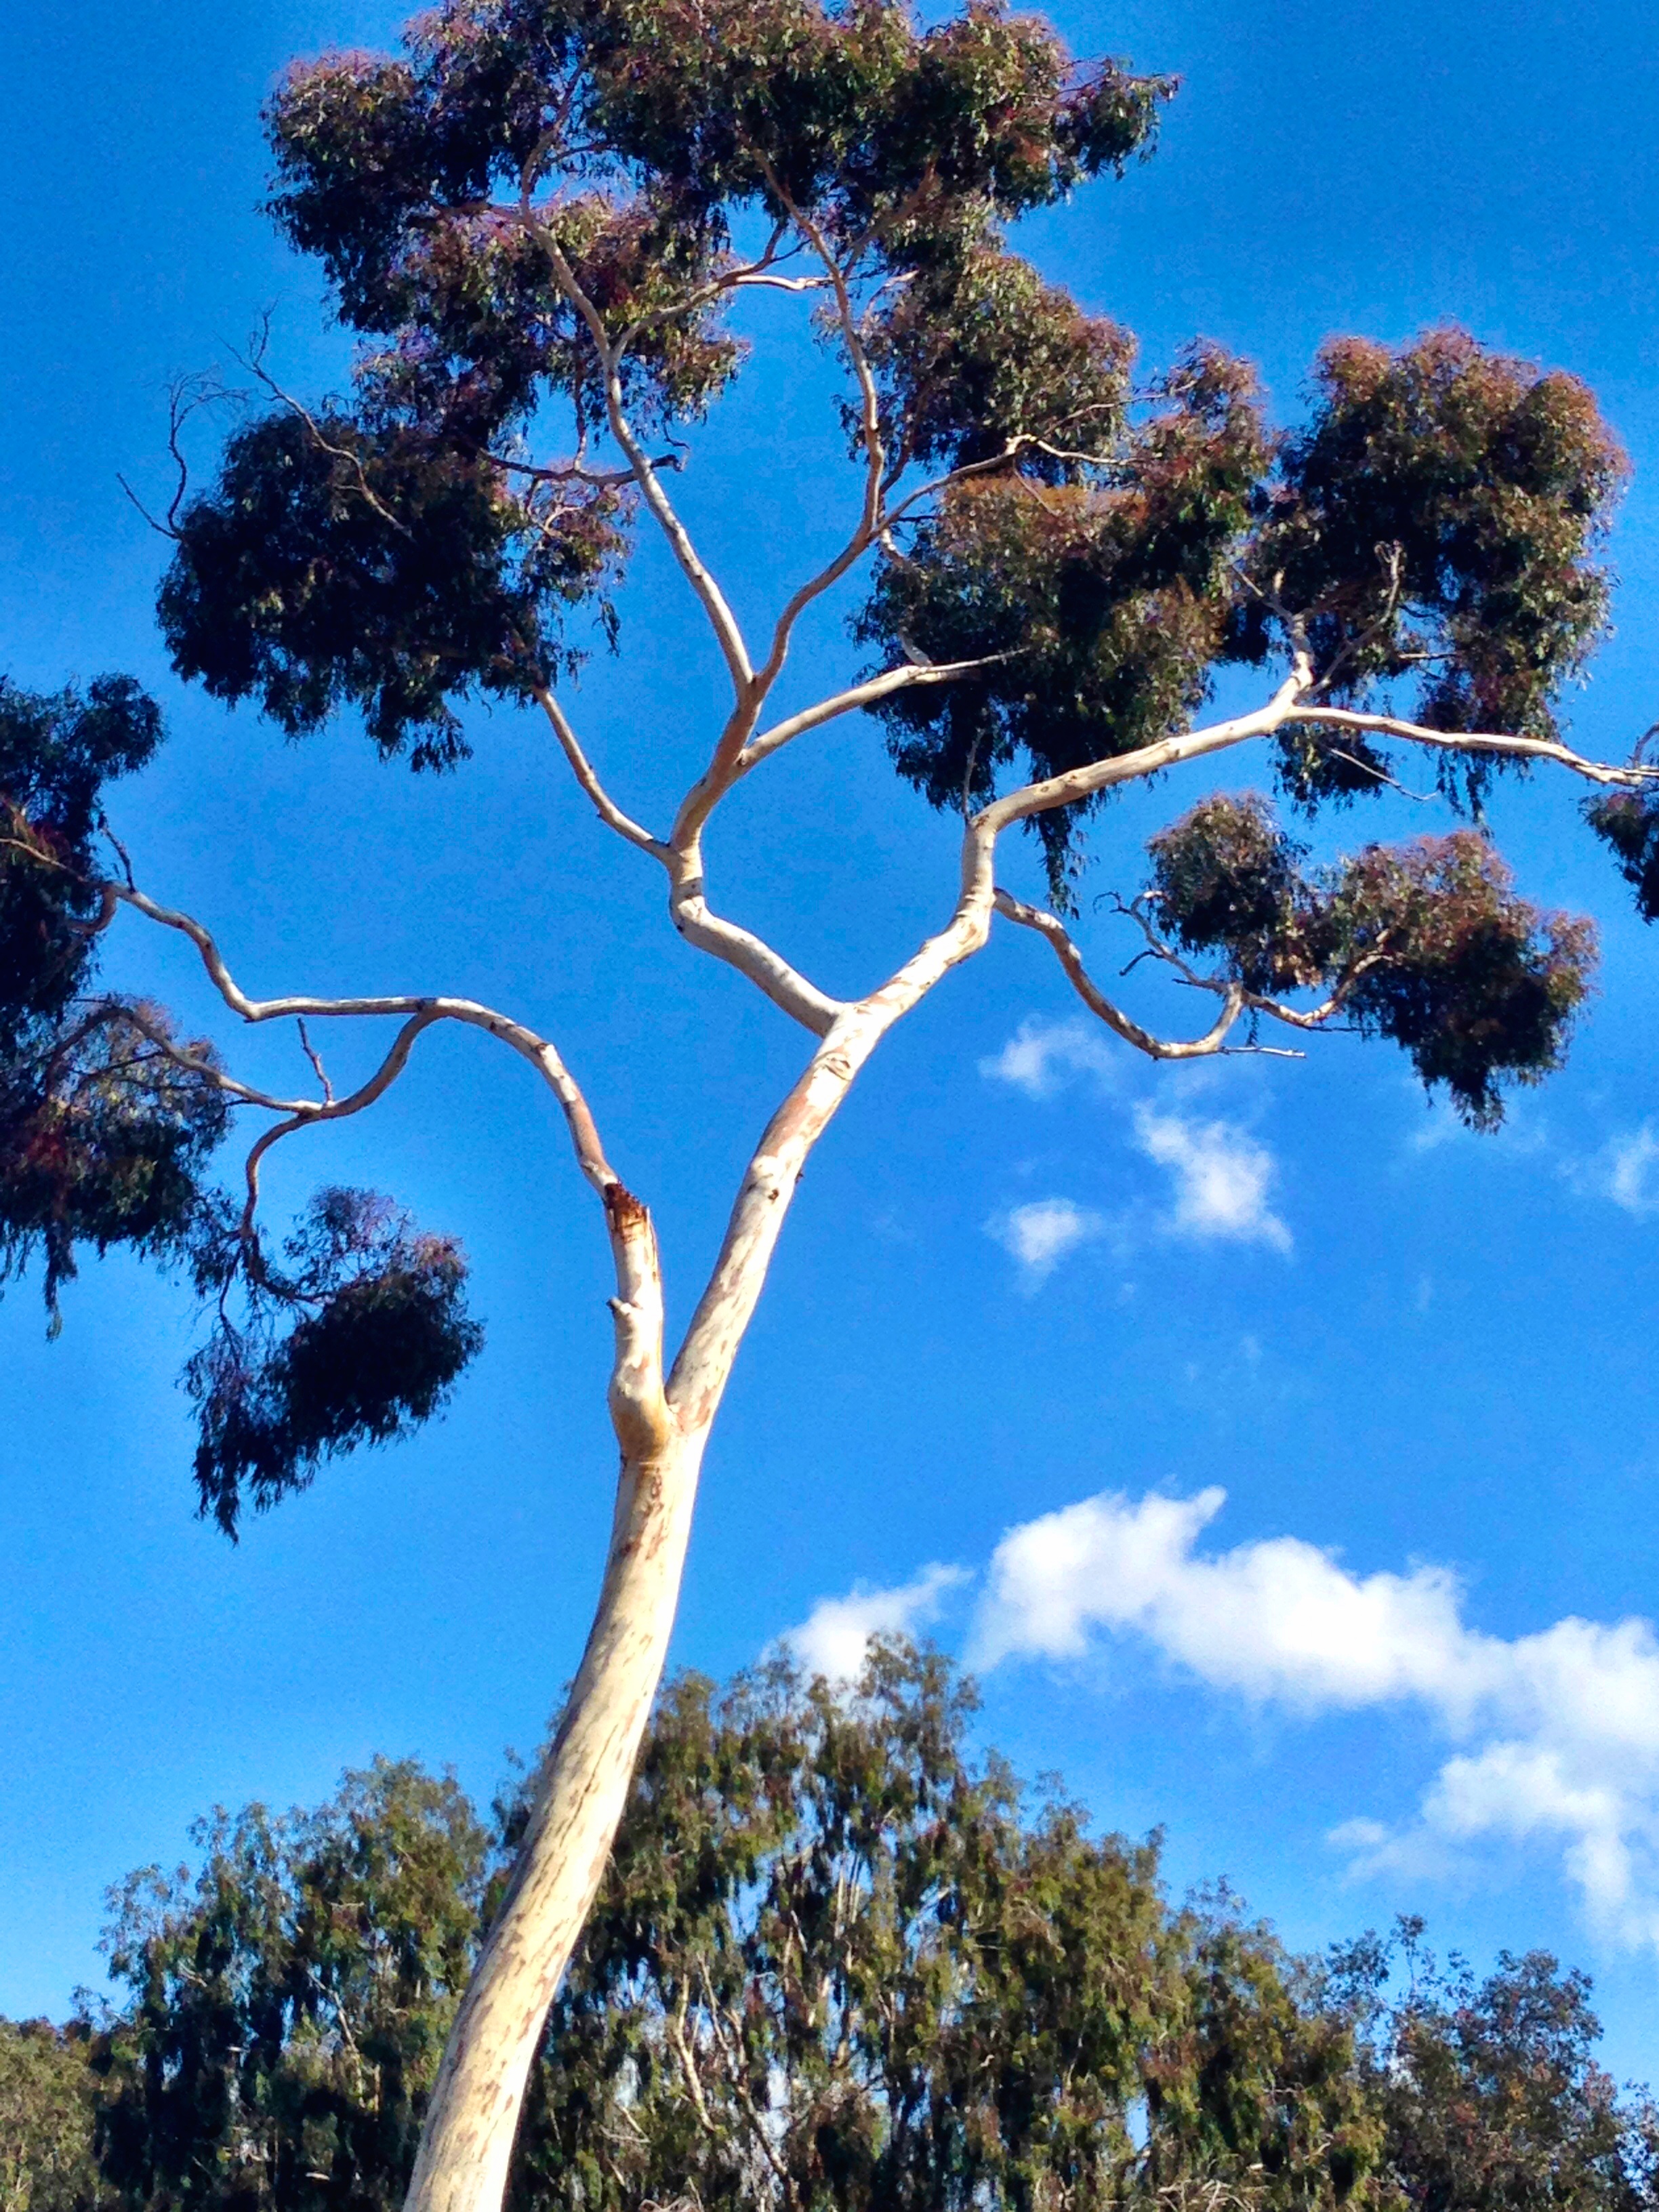 Eucalyptus Tree, Balboa Park, San Diego